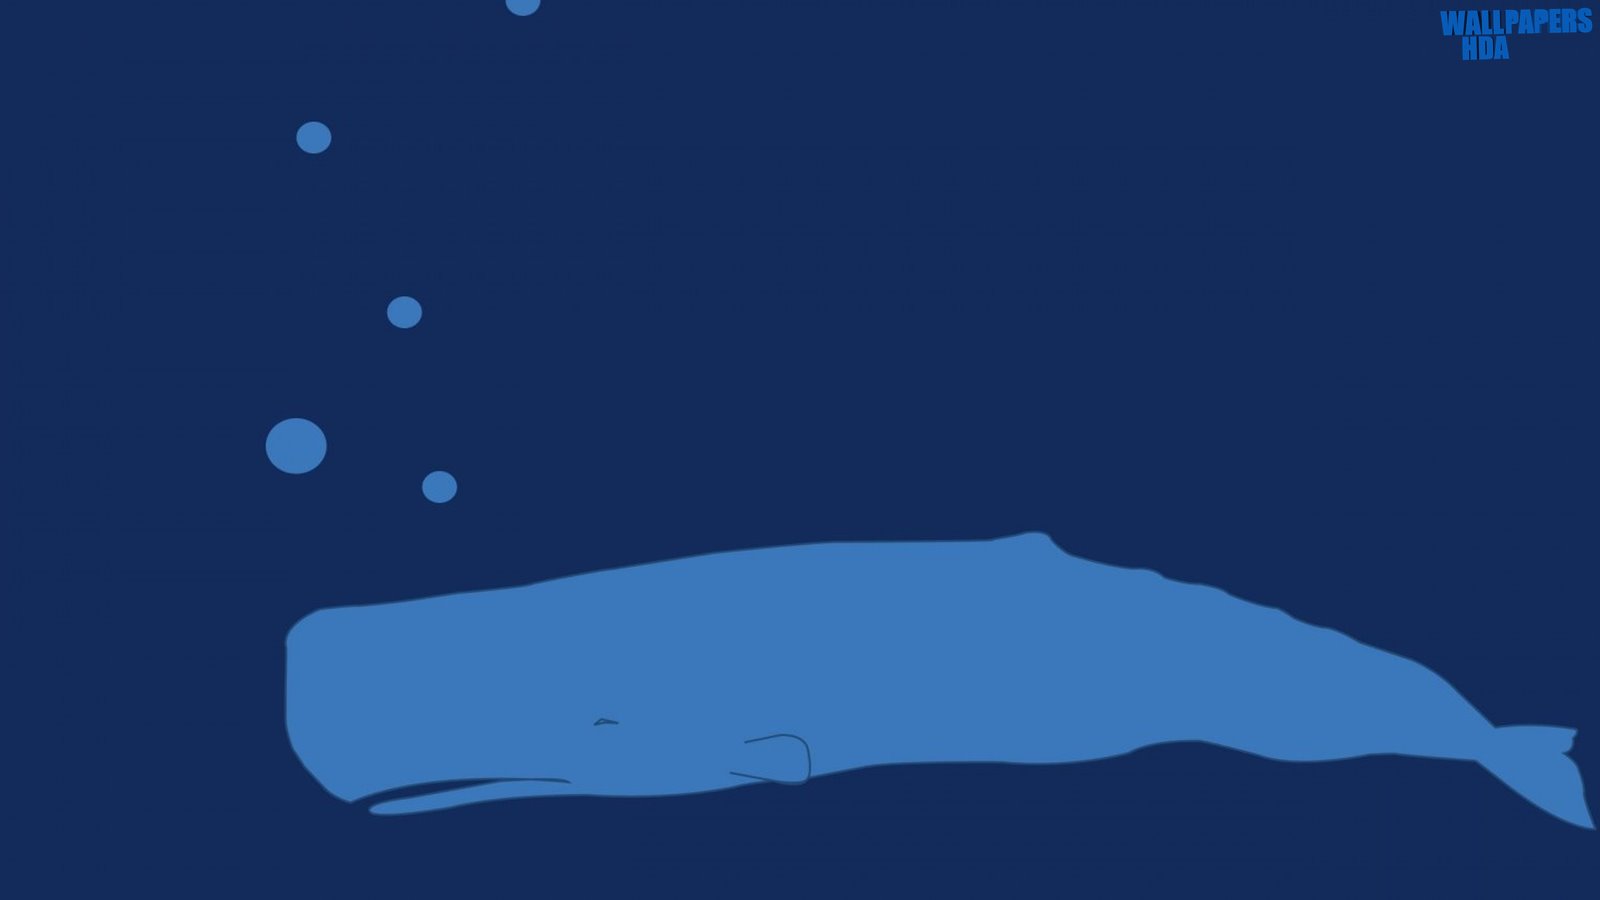 Whale underwater cartoon wallpaper 1600x900